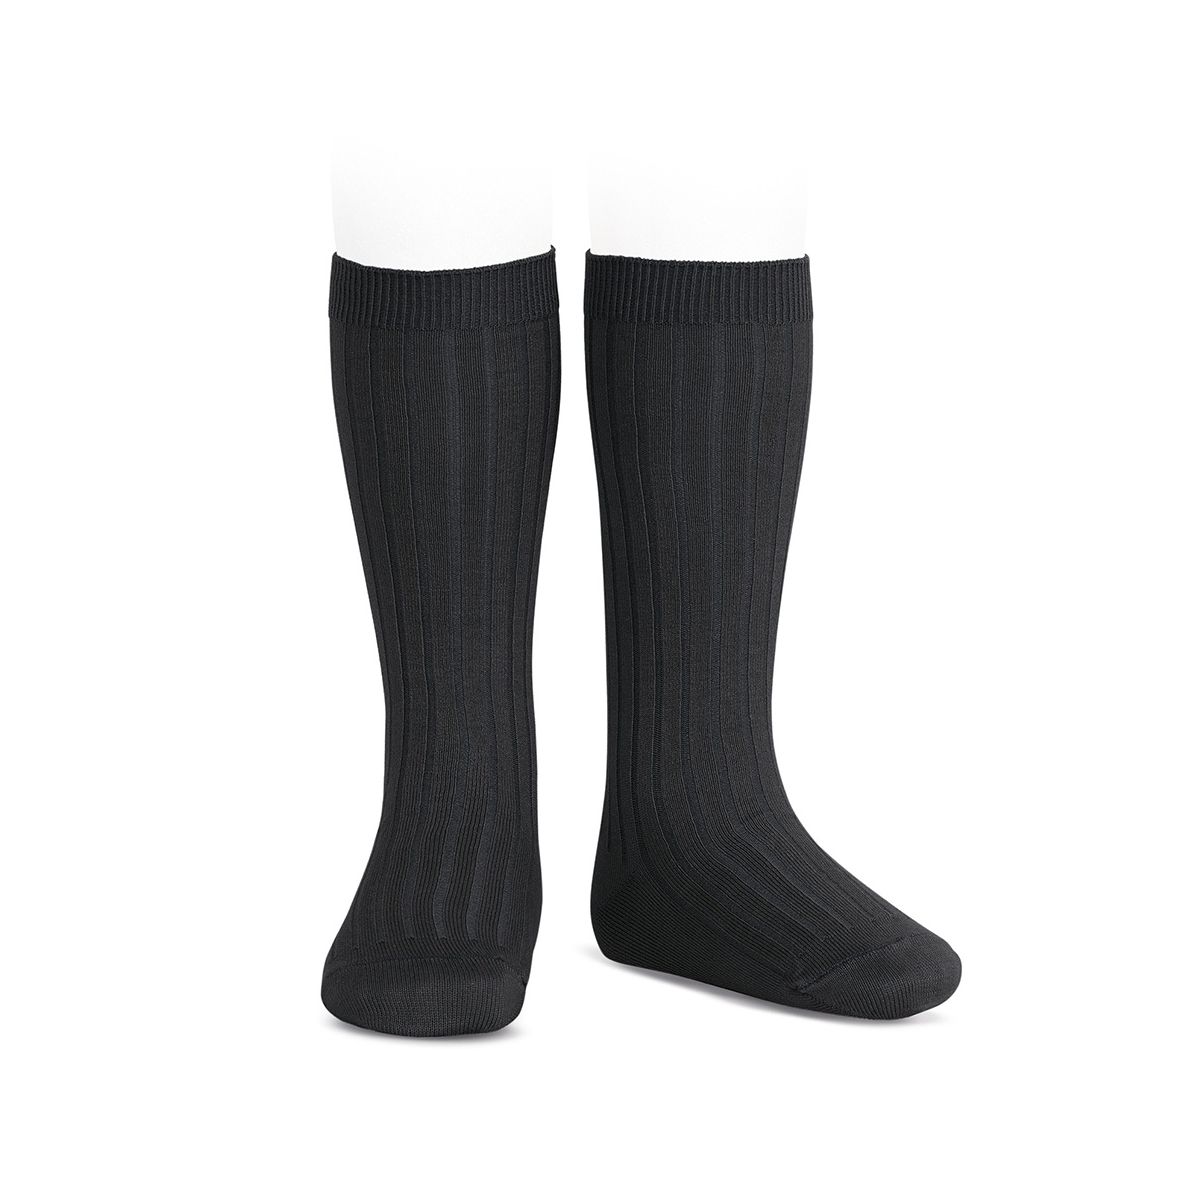 Condor - Wide Ribbed Cotton Knee High Socks black - Medias y